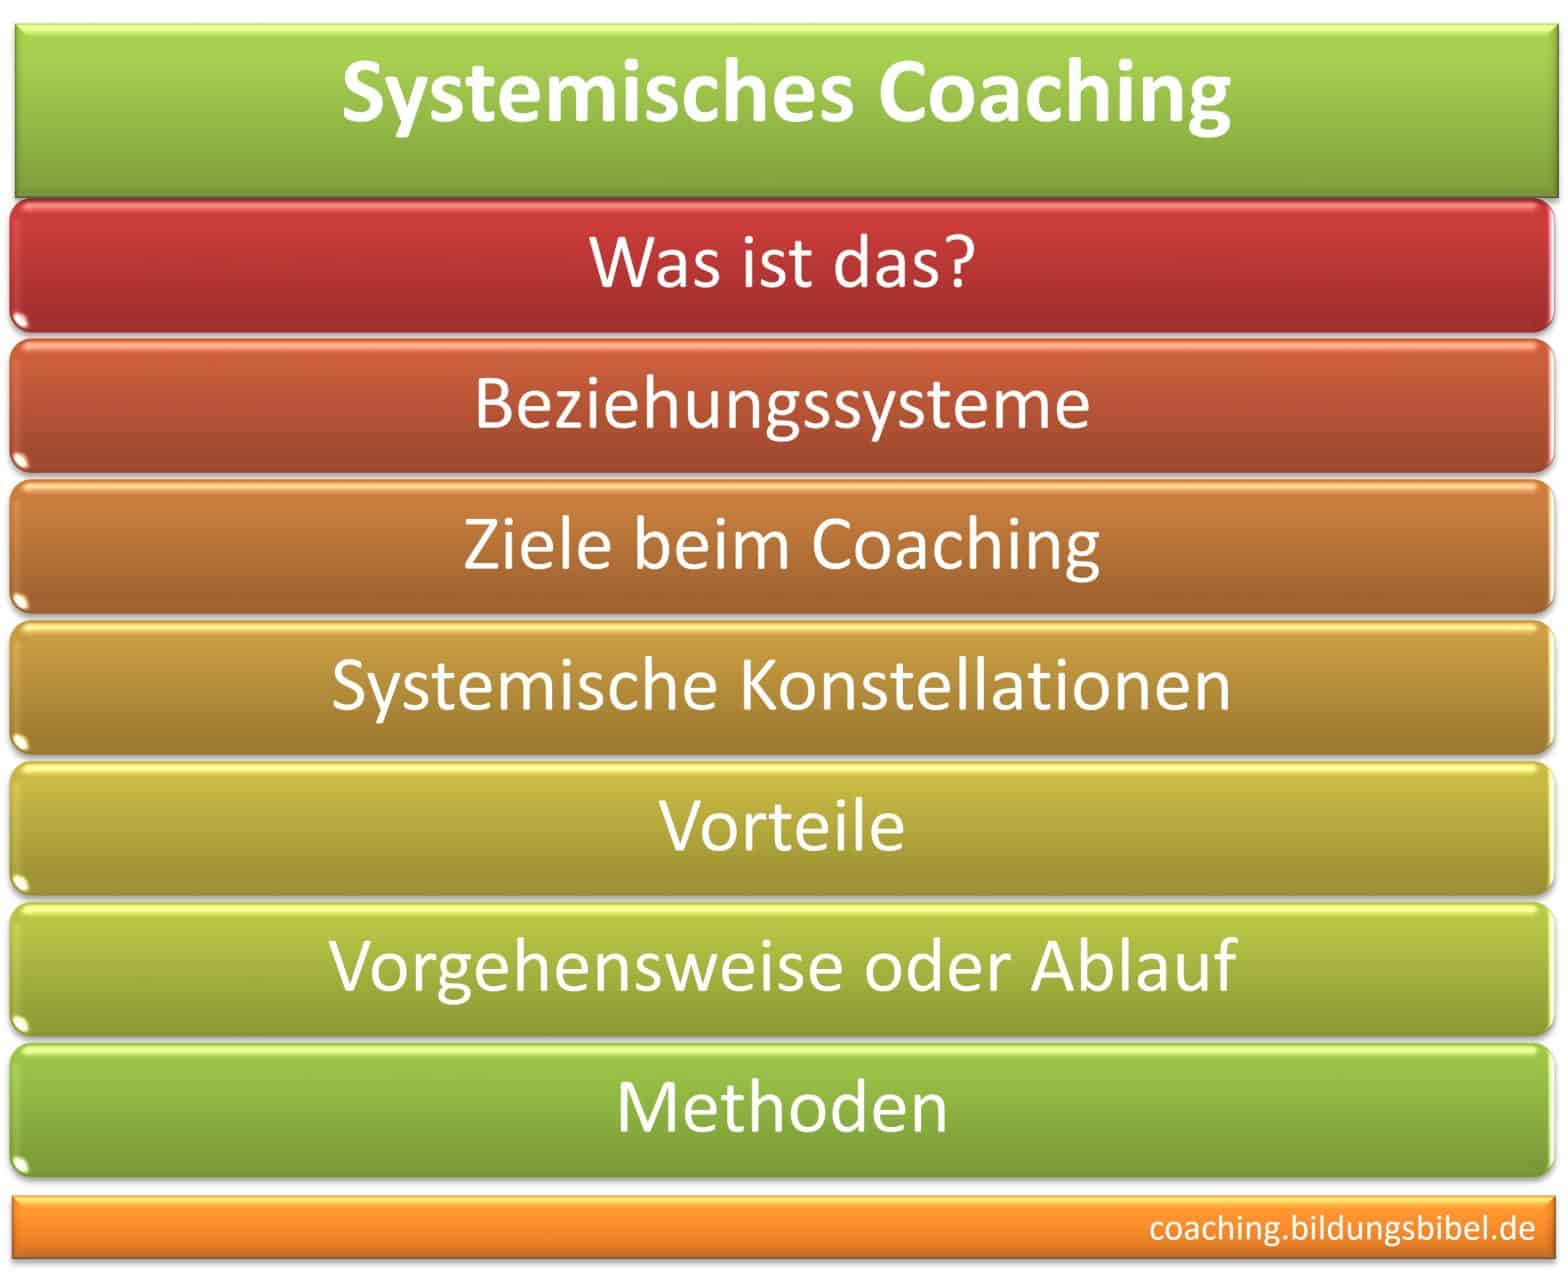 Systemisches Coaching, Coach, Definition, Einführung, Ziele, Konstellationen, Vorteile, Vorgehensweise, Ablauf, Beziehungssysteme.